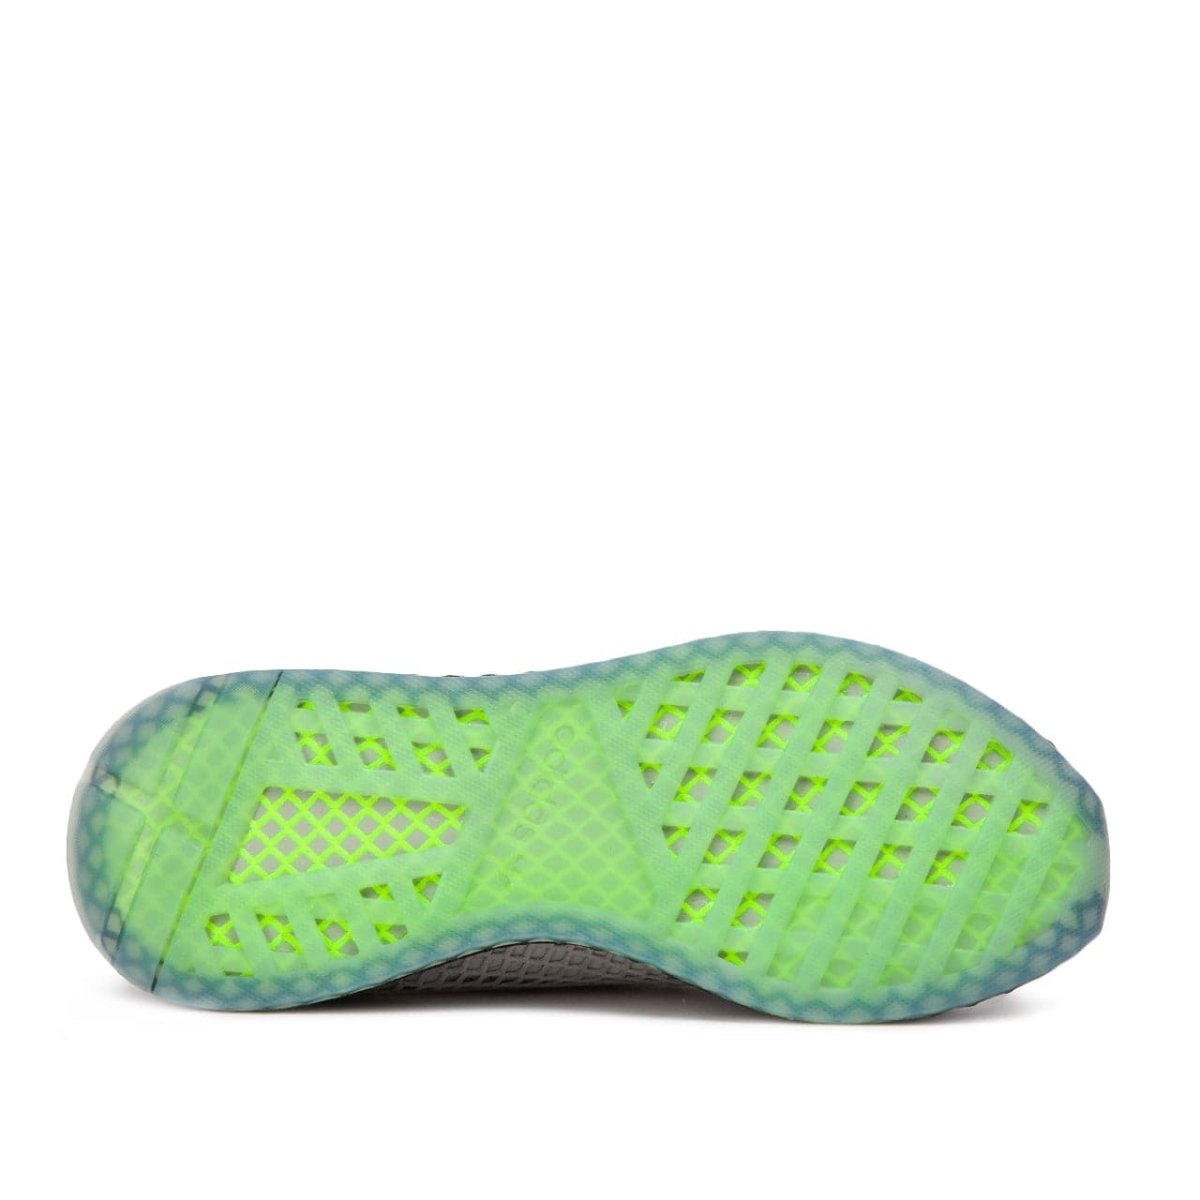 adidas Deerupt Runner (Grau/ Minze)  - Allike Store